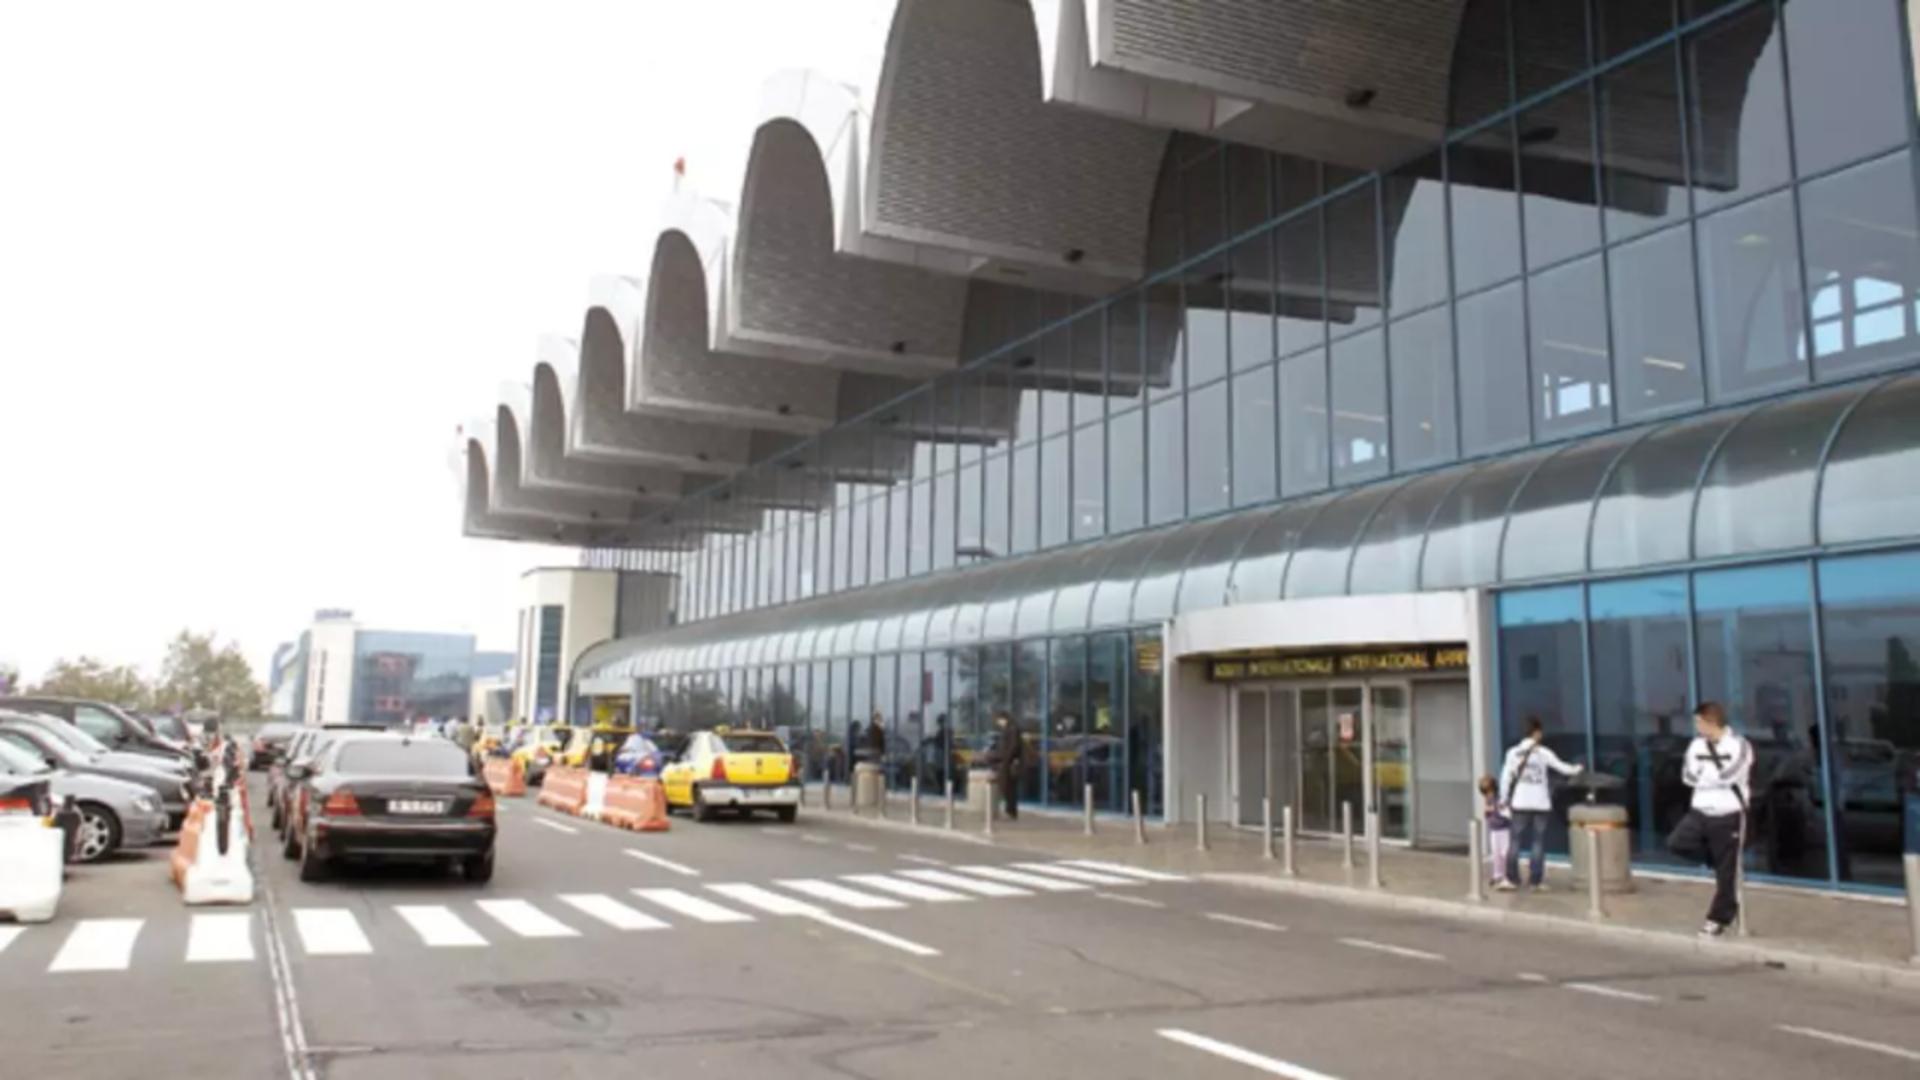 Aeroportul Henri Coandă - Otopeni